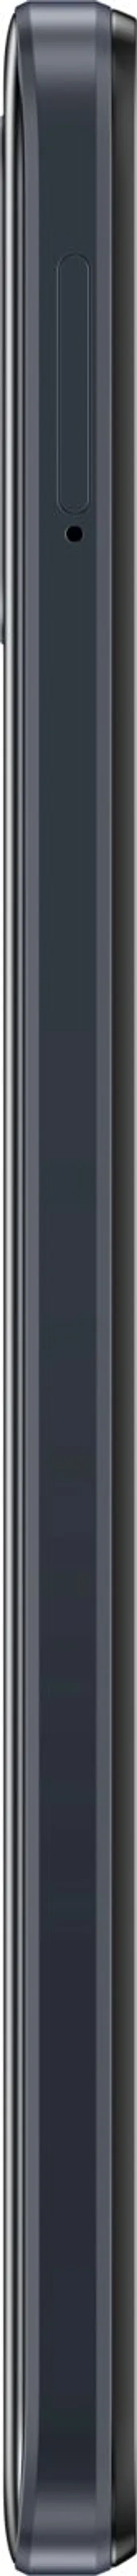 Motorola e13 64 GB älypuhelin, musta - 8